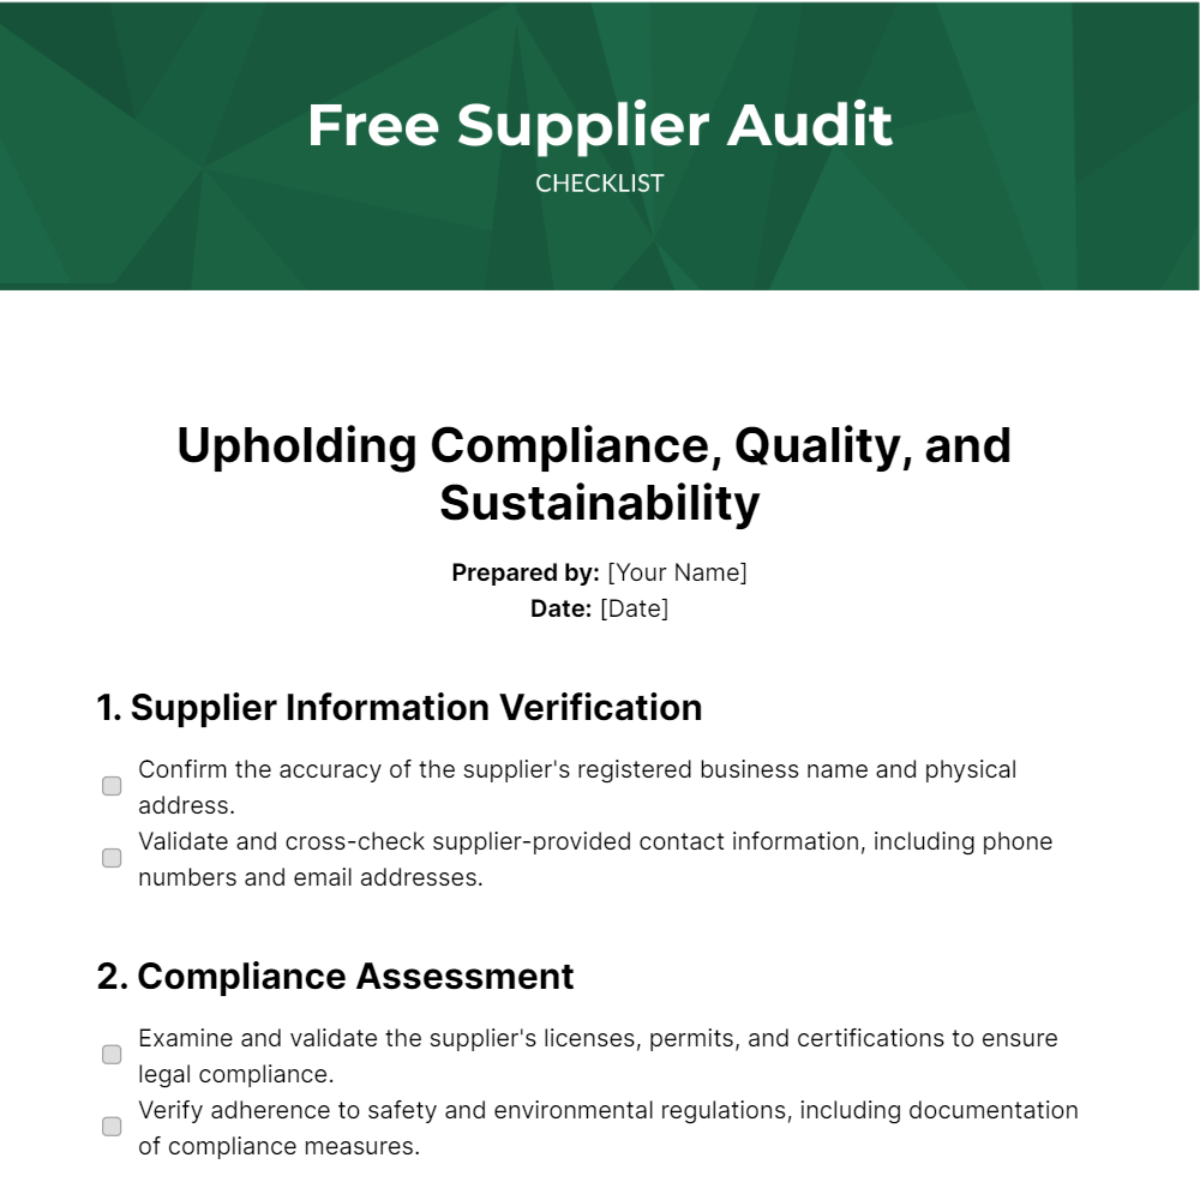 Free Supplier Audit Checklist Template